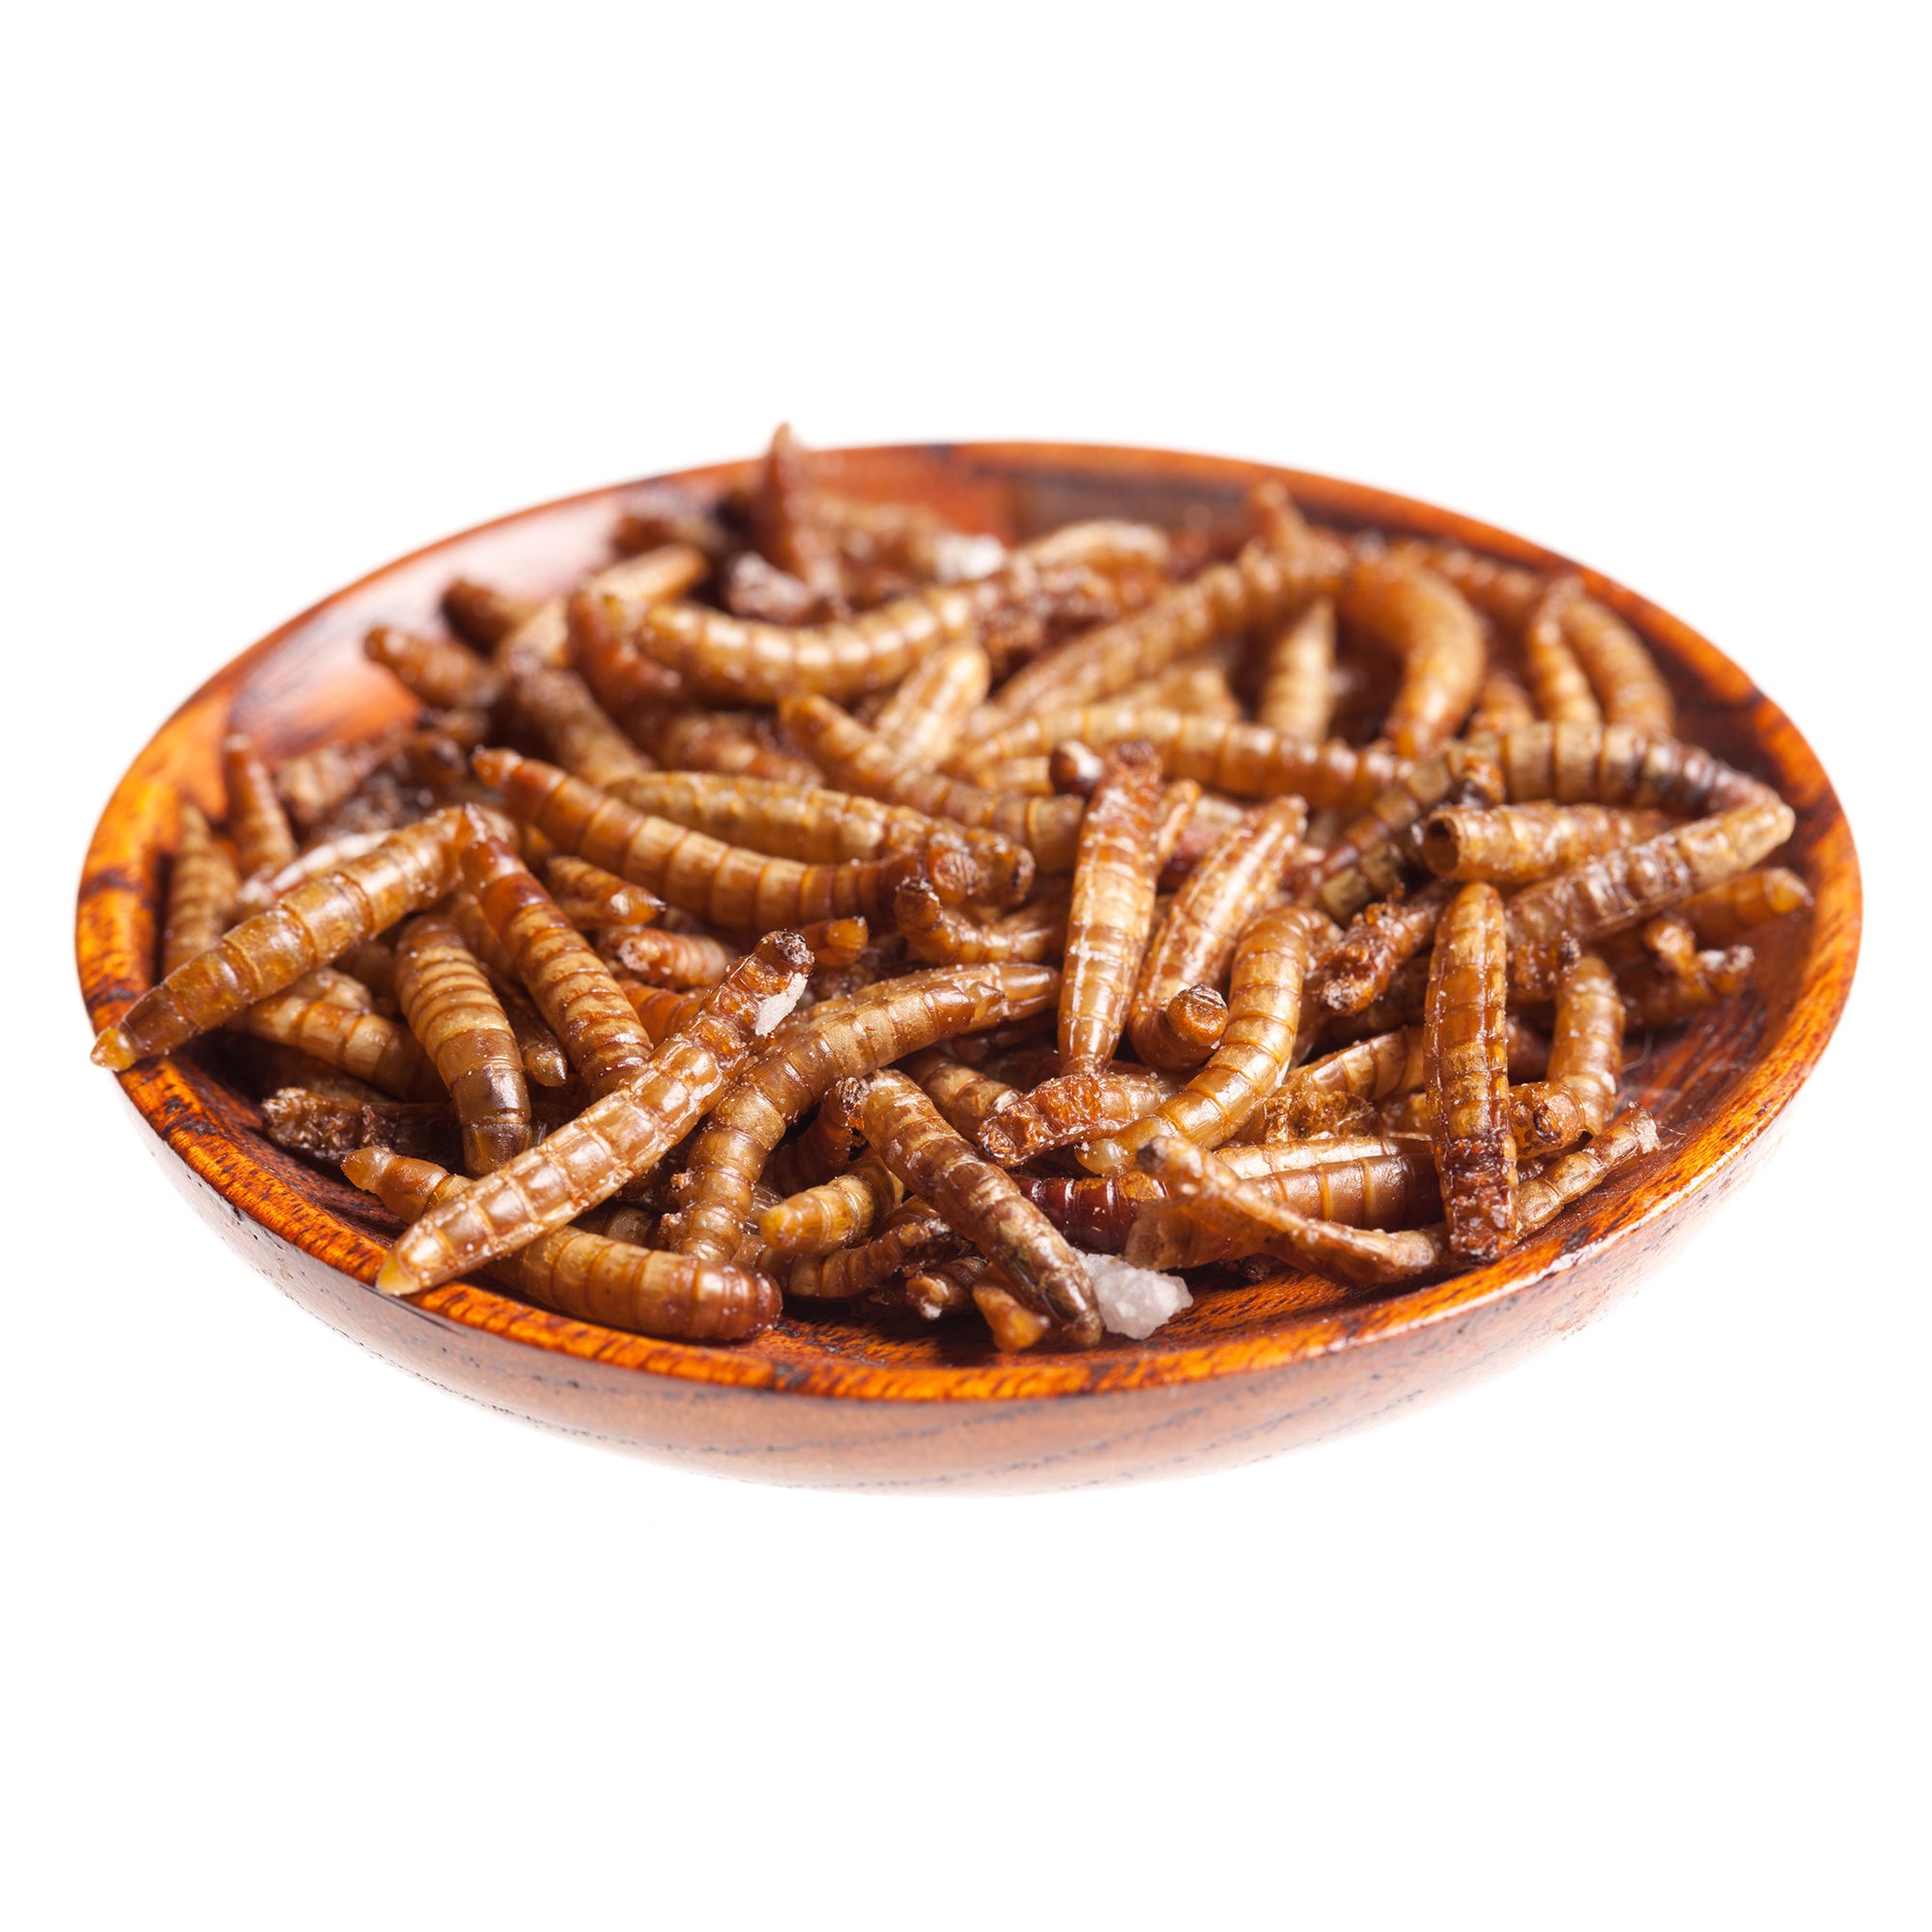 Découverte : Insectes comestibles, Vers de farine au curry